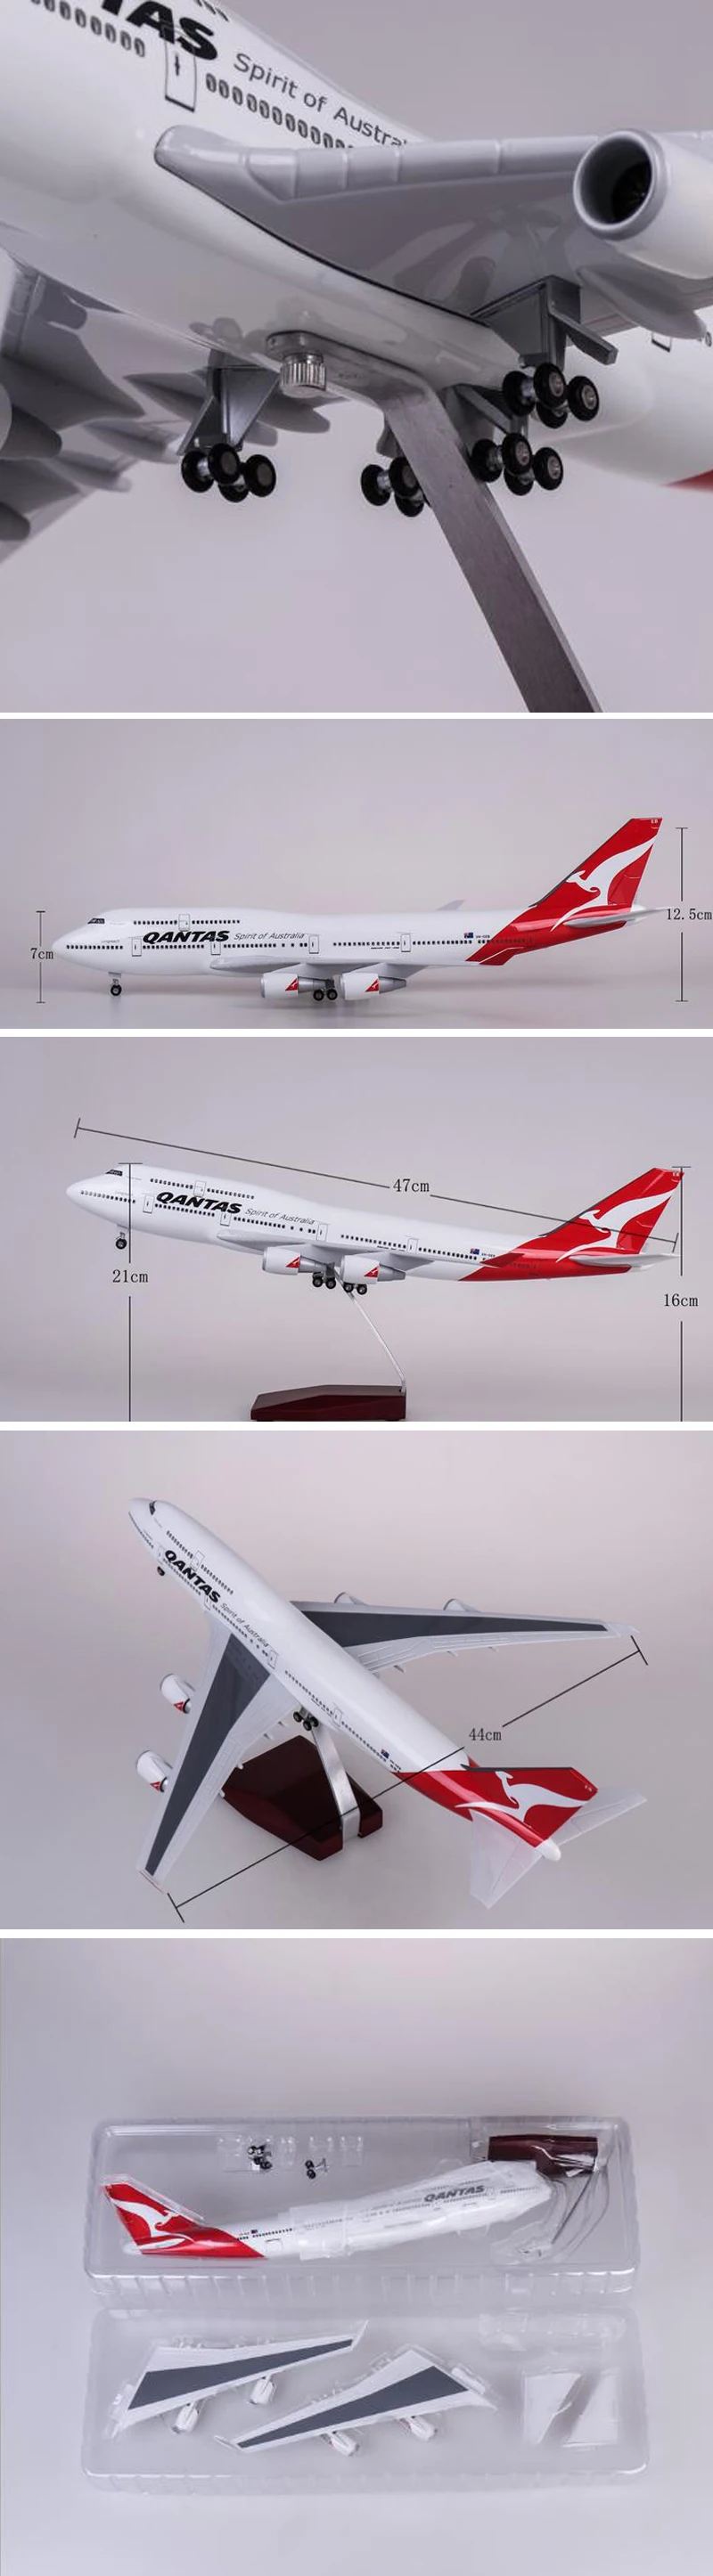 47 см модель самолета 1/150 масштаб QANTAS Airlines B747 модель самолета Dreamliner самолет с светильник на колесах из смолы коллекция Airbus